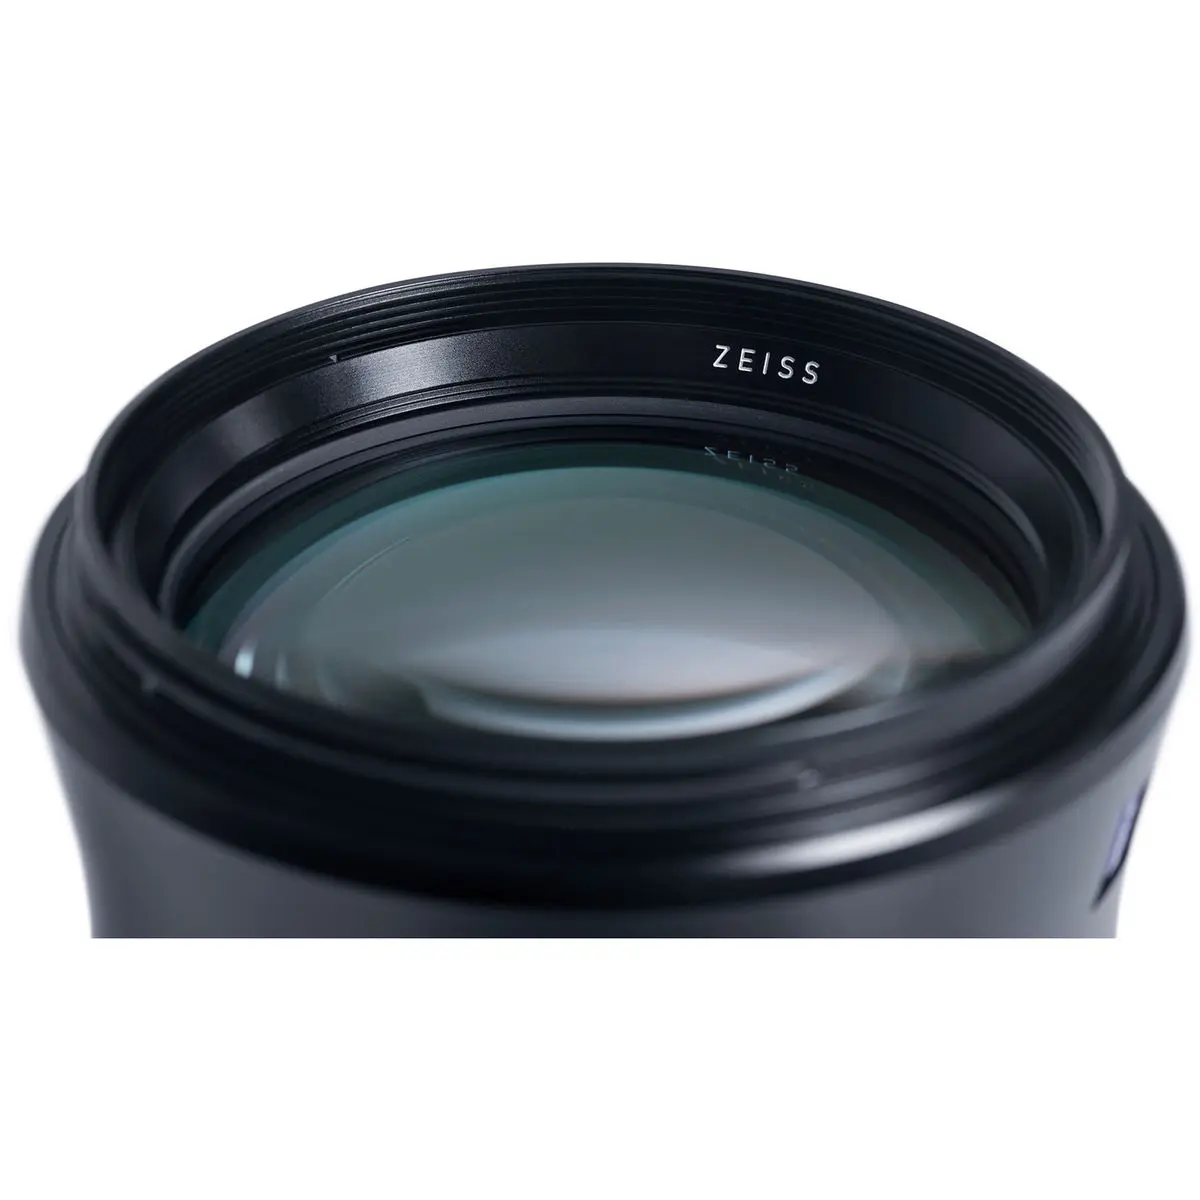 11. Carl Zeiss Otus 1.4/100 ZE (Canon) Lens